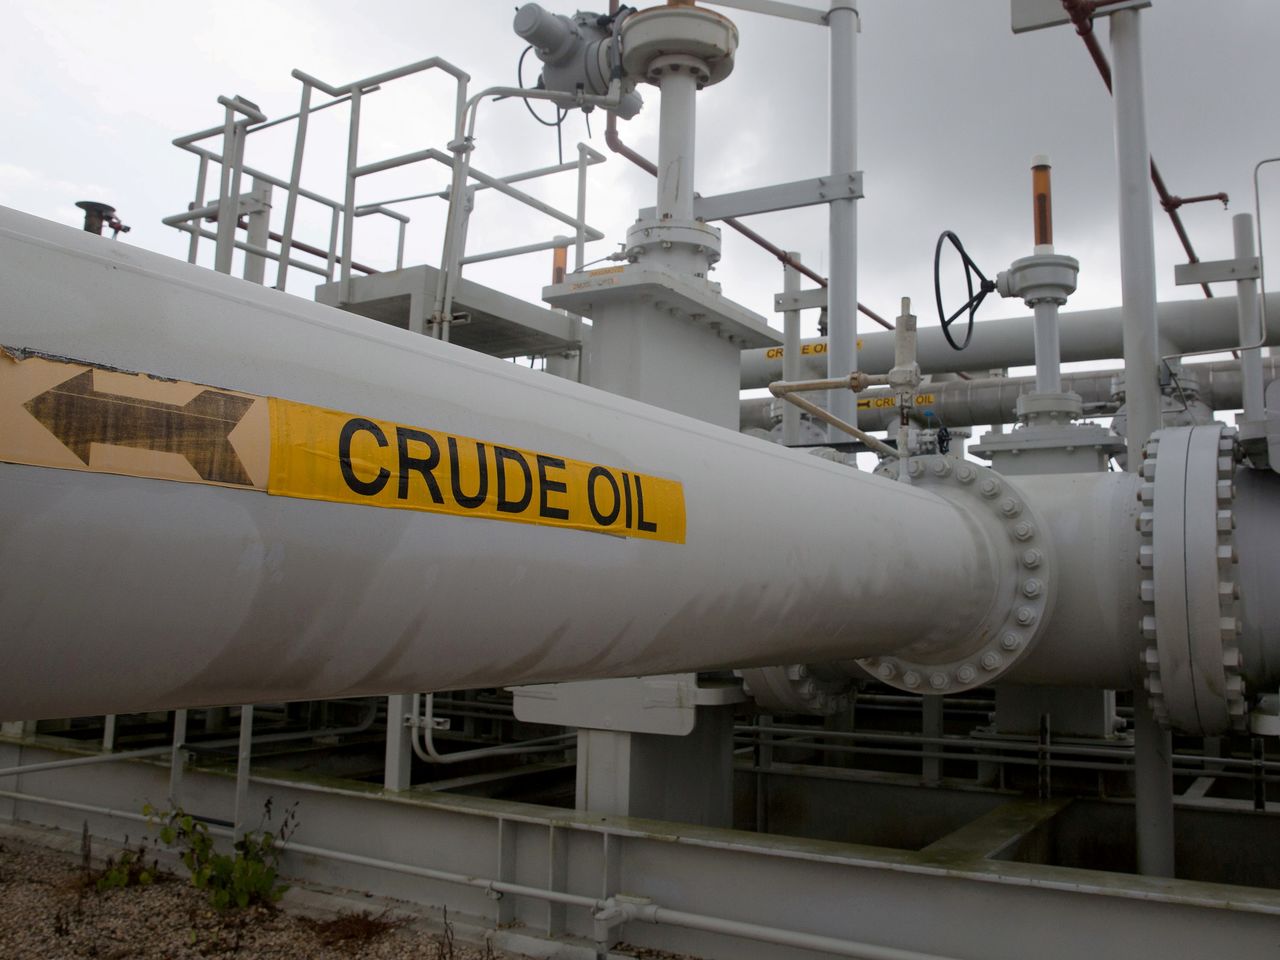 FOTO DE ARCHIVO: Un laberinto de tuberías y válvulas de petróleo crudo es fotografiado durante un recorrido del Departamento de Energía en la Reserva Estratégica de Petróleo en Freeport, Texas, Estados Unidos 9 de junio de 2016.  REUTERS/Richard Carson/File Photo